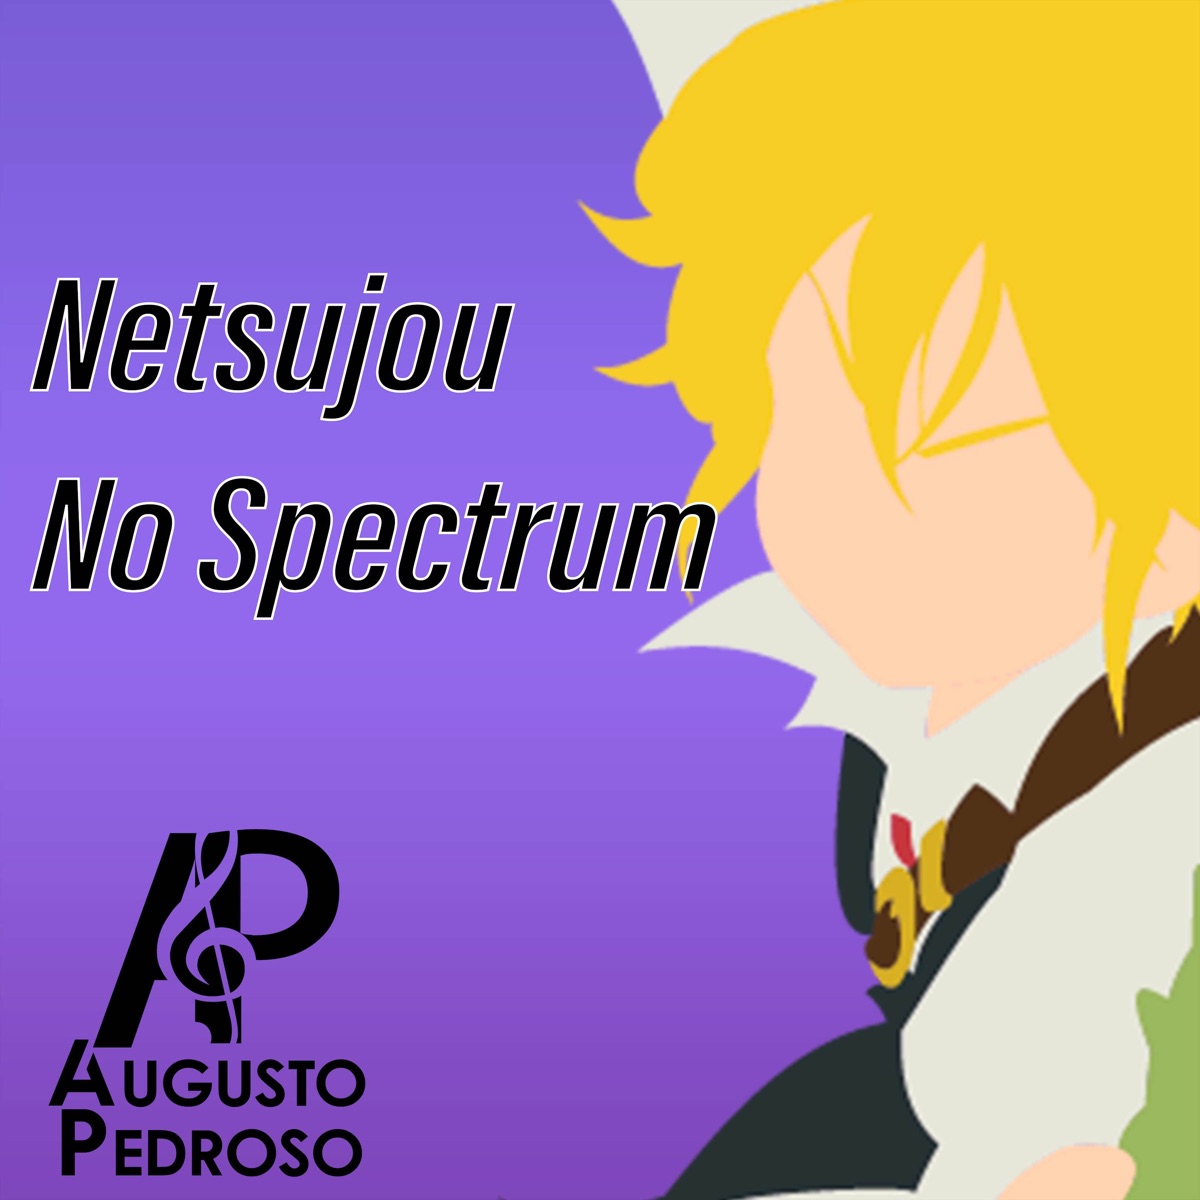 Netsujou No Spectrum - Nanatsu no Taizai 